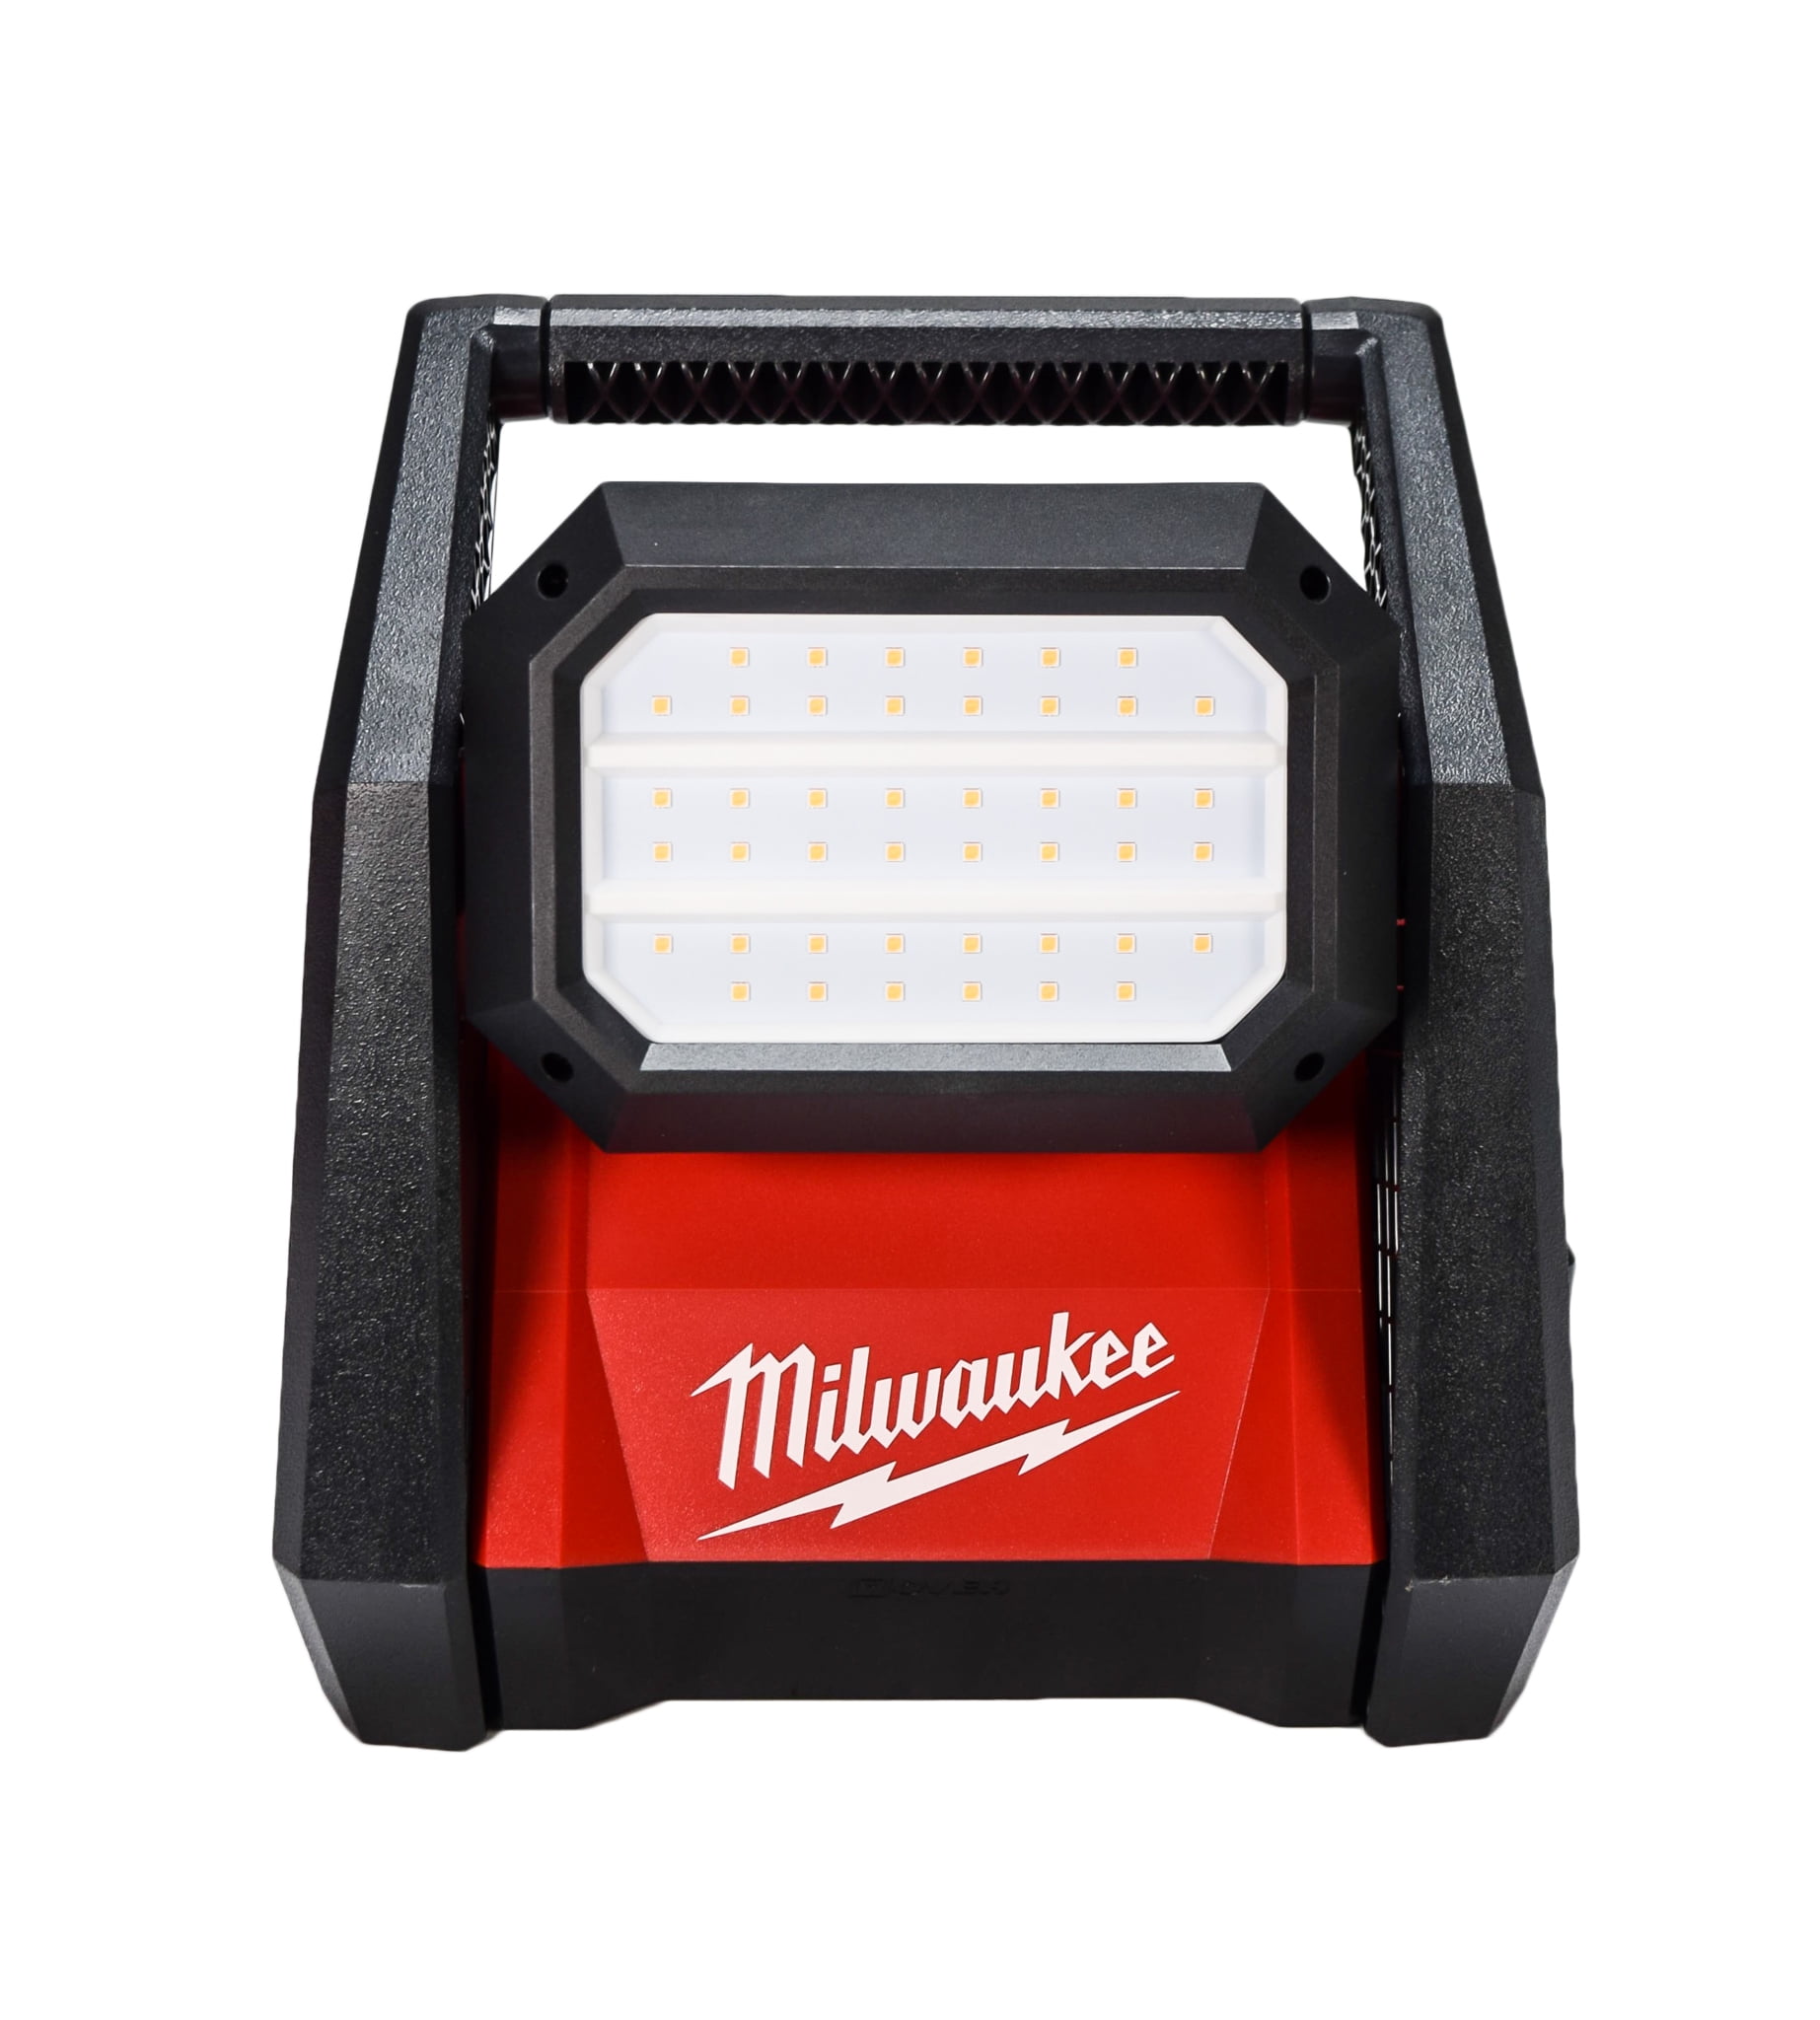 NEW MILWAUKEE 2360-20 M18 LED 18 VOLT TRUEVIEW LED LP FLOOD WORK LIGHT 